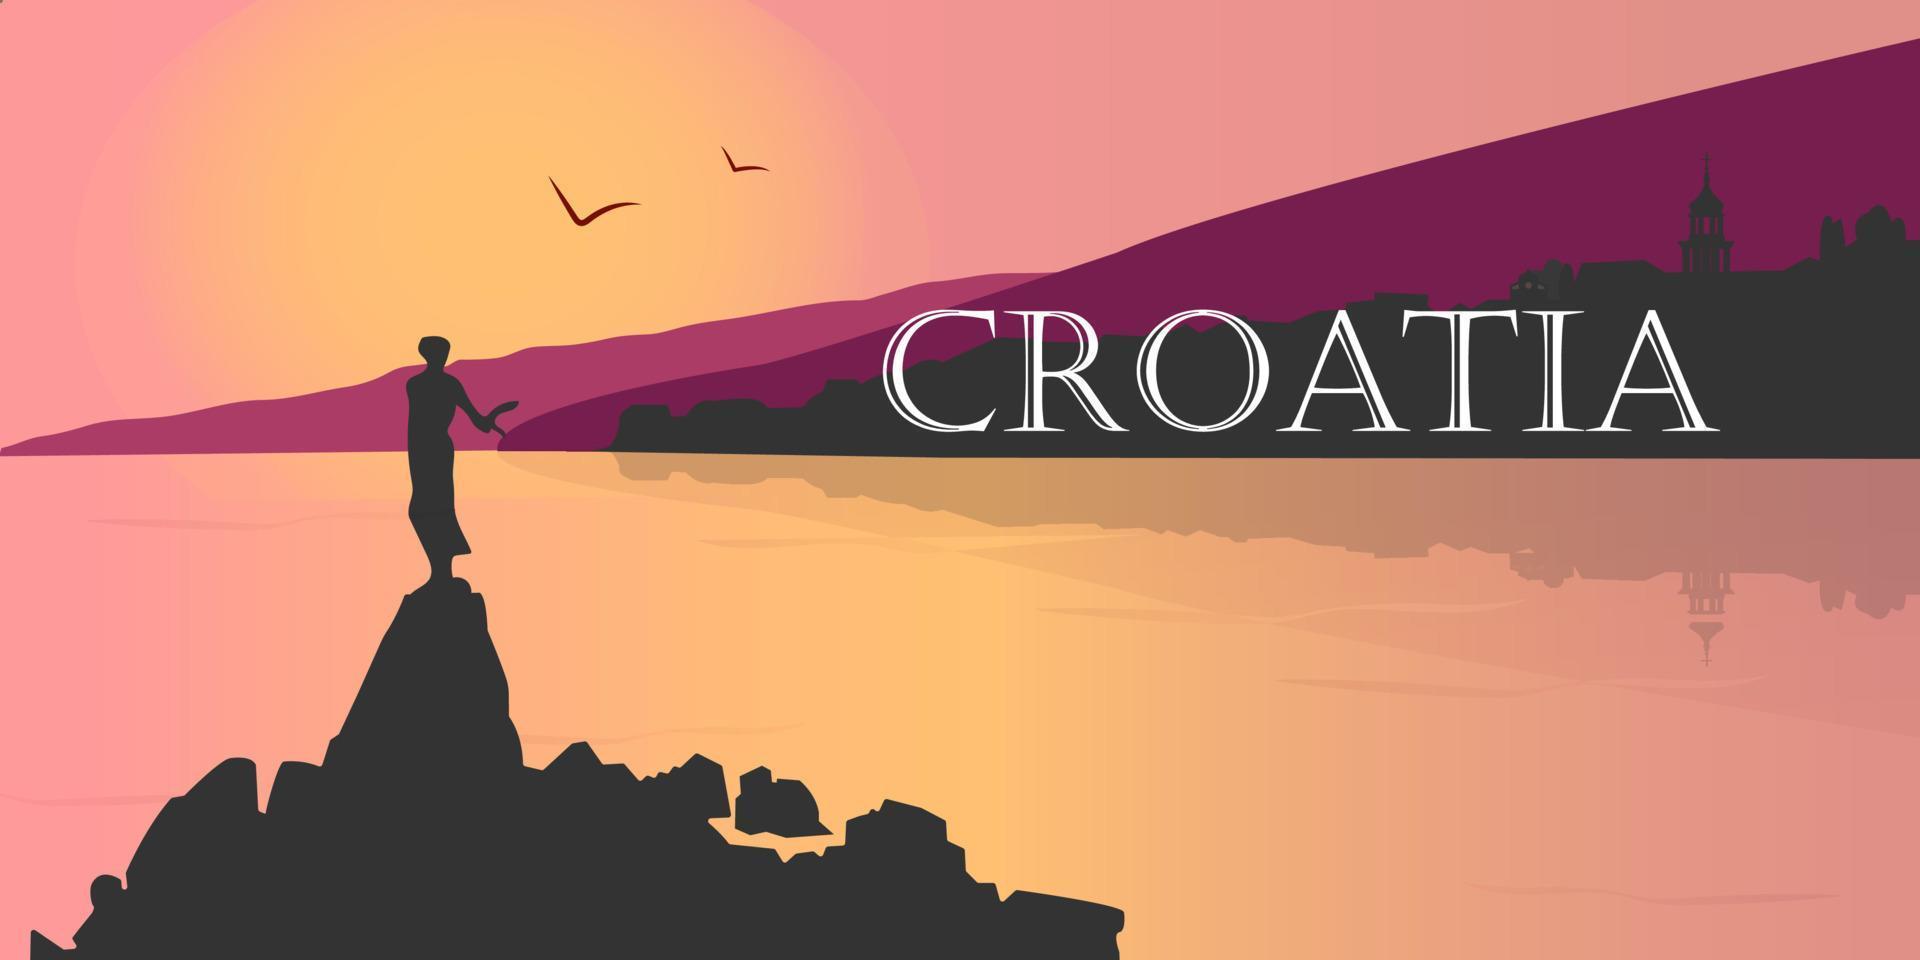 flache Panoramalandschaft. hintergrundsilhouette von kroatien. Silhouette von Bergen und Meer auf einem farbigen Hintergrund. Vektor-Illustration. vektor